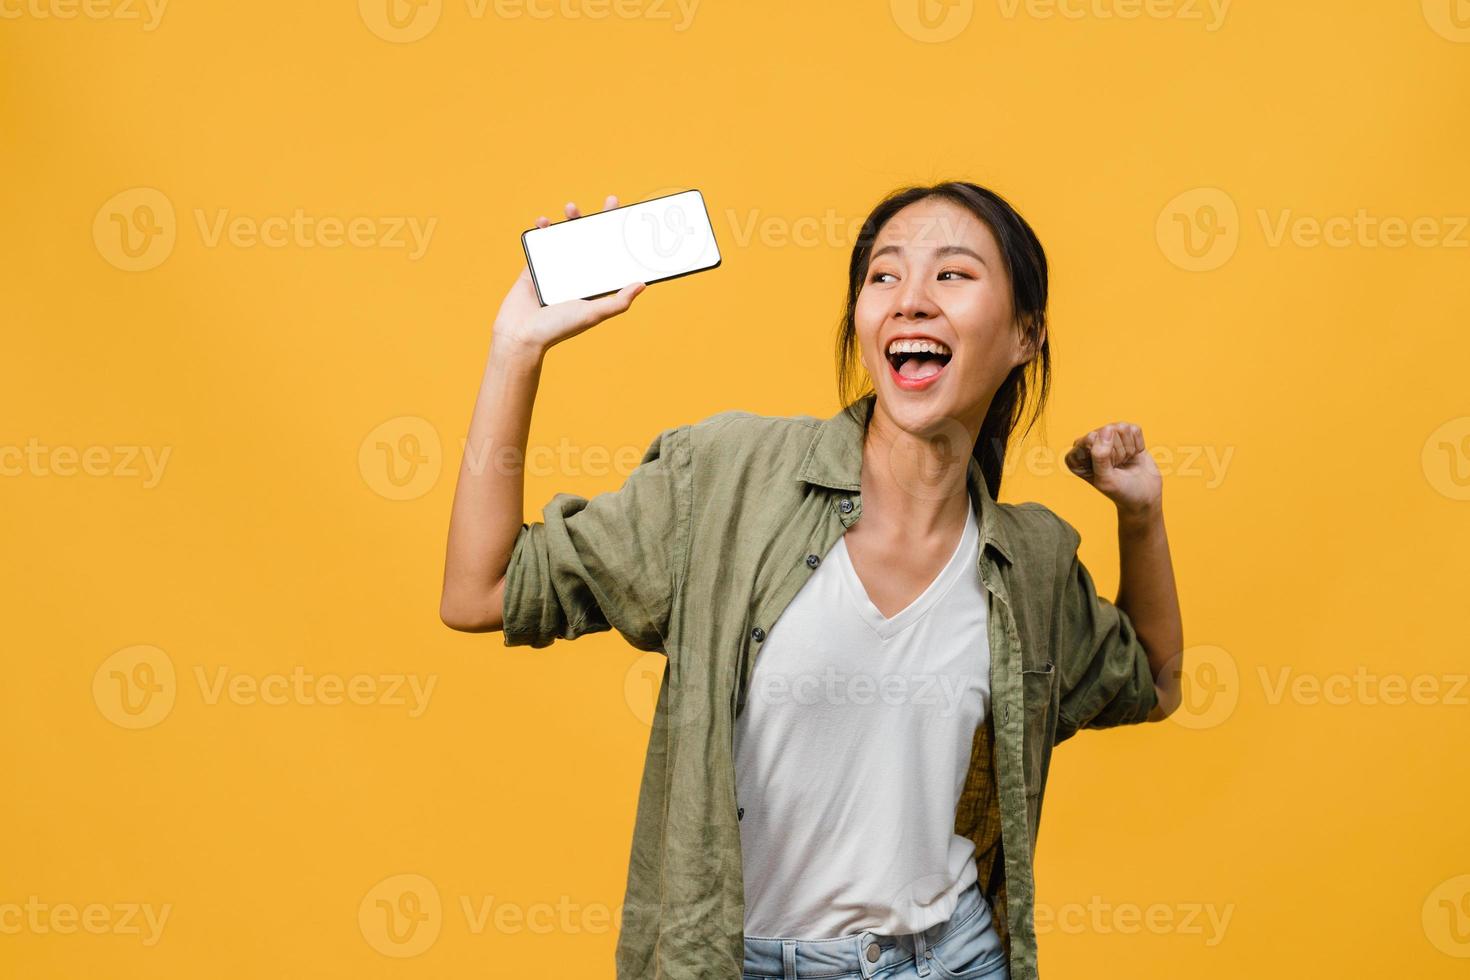 jovem senhora asiática mostra tela vazia do smartphone com expressão positiva, sorri amplamente, vestida com roupas casuais, sentindo felicidade sobre fundo amarelo. telefone celular com tela branca na mão feminina. foto